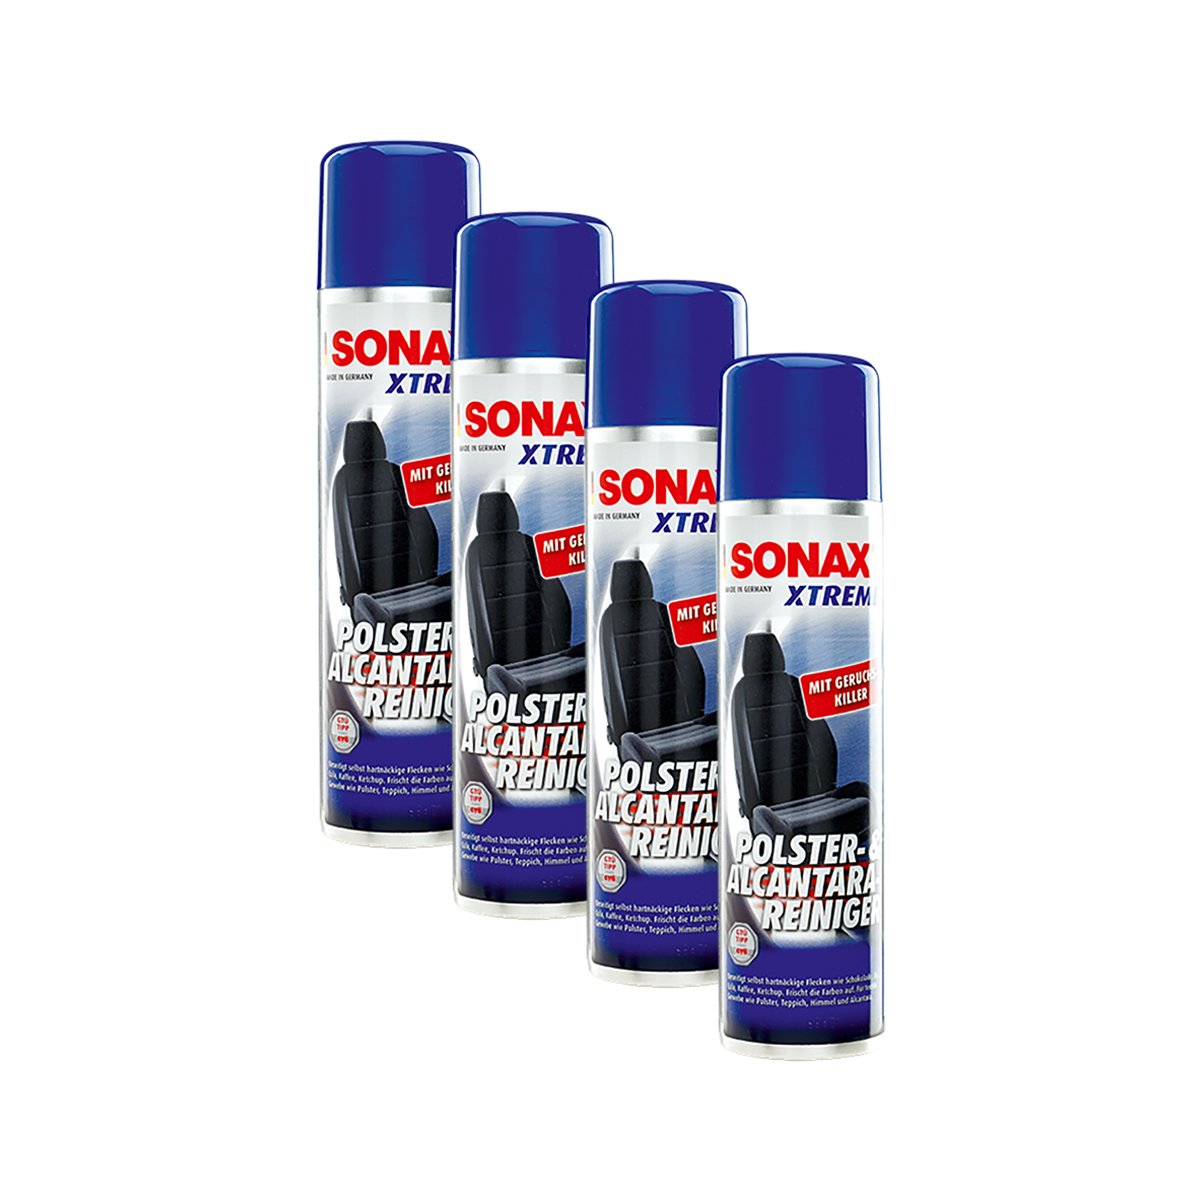 SONAX 4X 02063000 Xtreme Polster- & AlcantaraReiniger Treibgasfrei Polsterreinig von SONAX